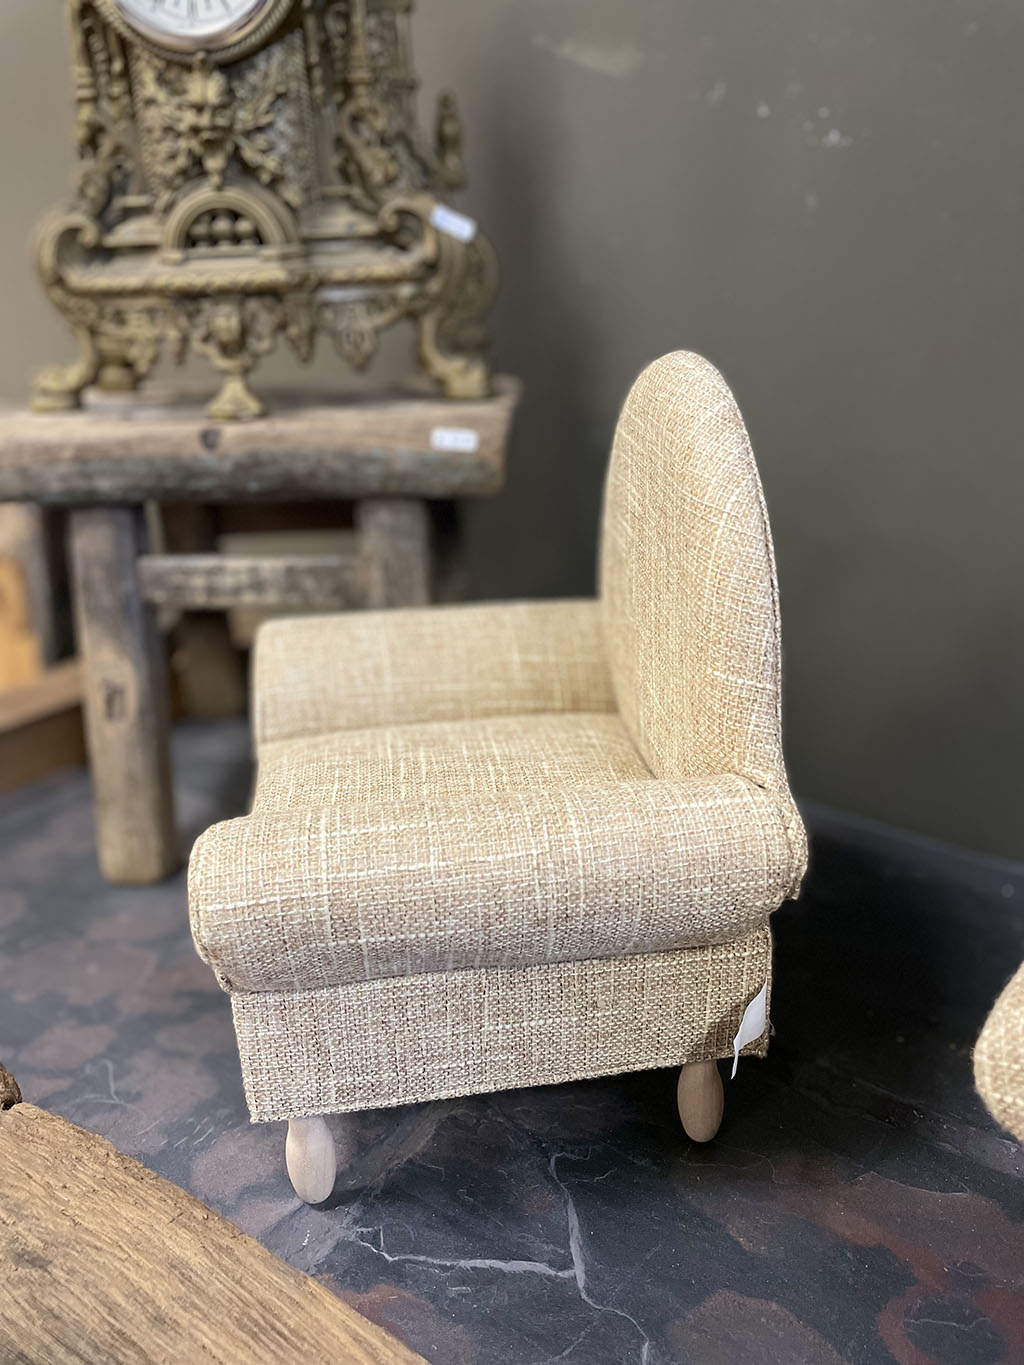 Handgemaakte linnen fauteuil met beige bekleding, perfect voor berenkoppels of geliefde knuffels.